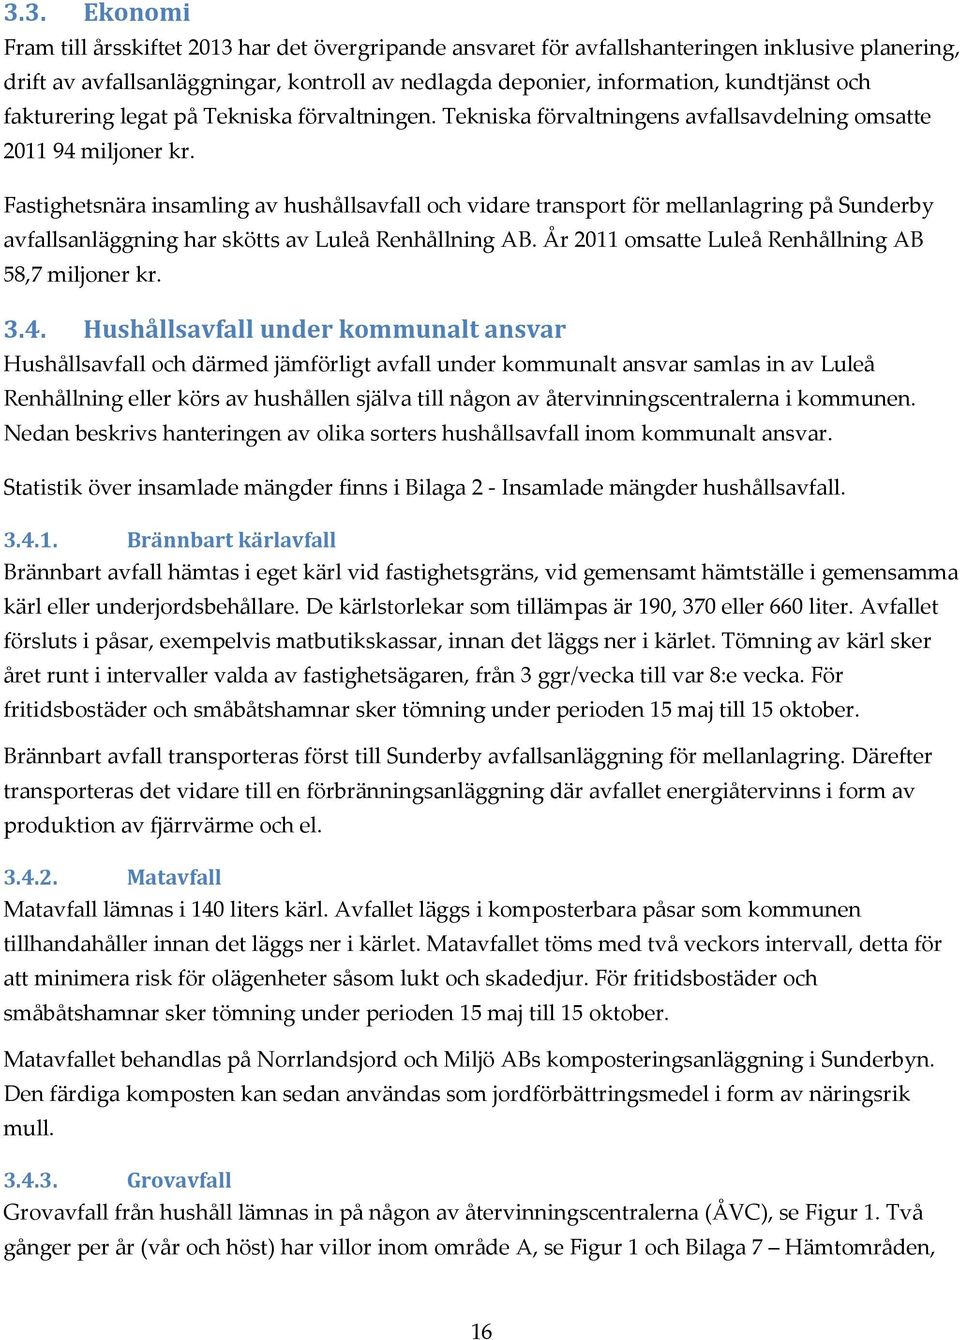 Fastighetsnära insamling av hushållsavfall och vidare transport för mellanlagring på Sunderby avfallsanläggning har skötts av Luleå Renhållning AB.